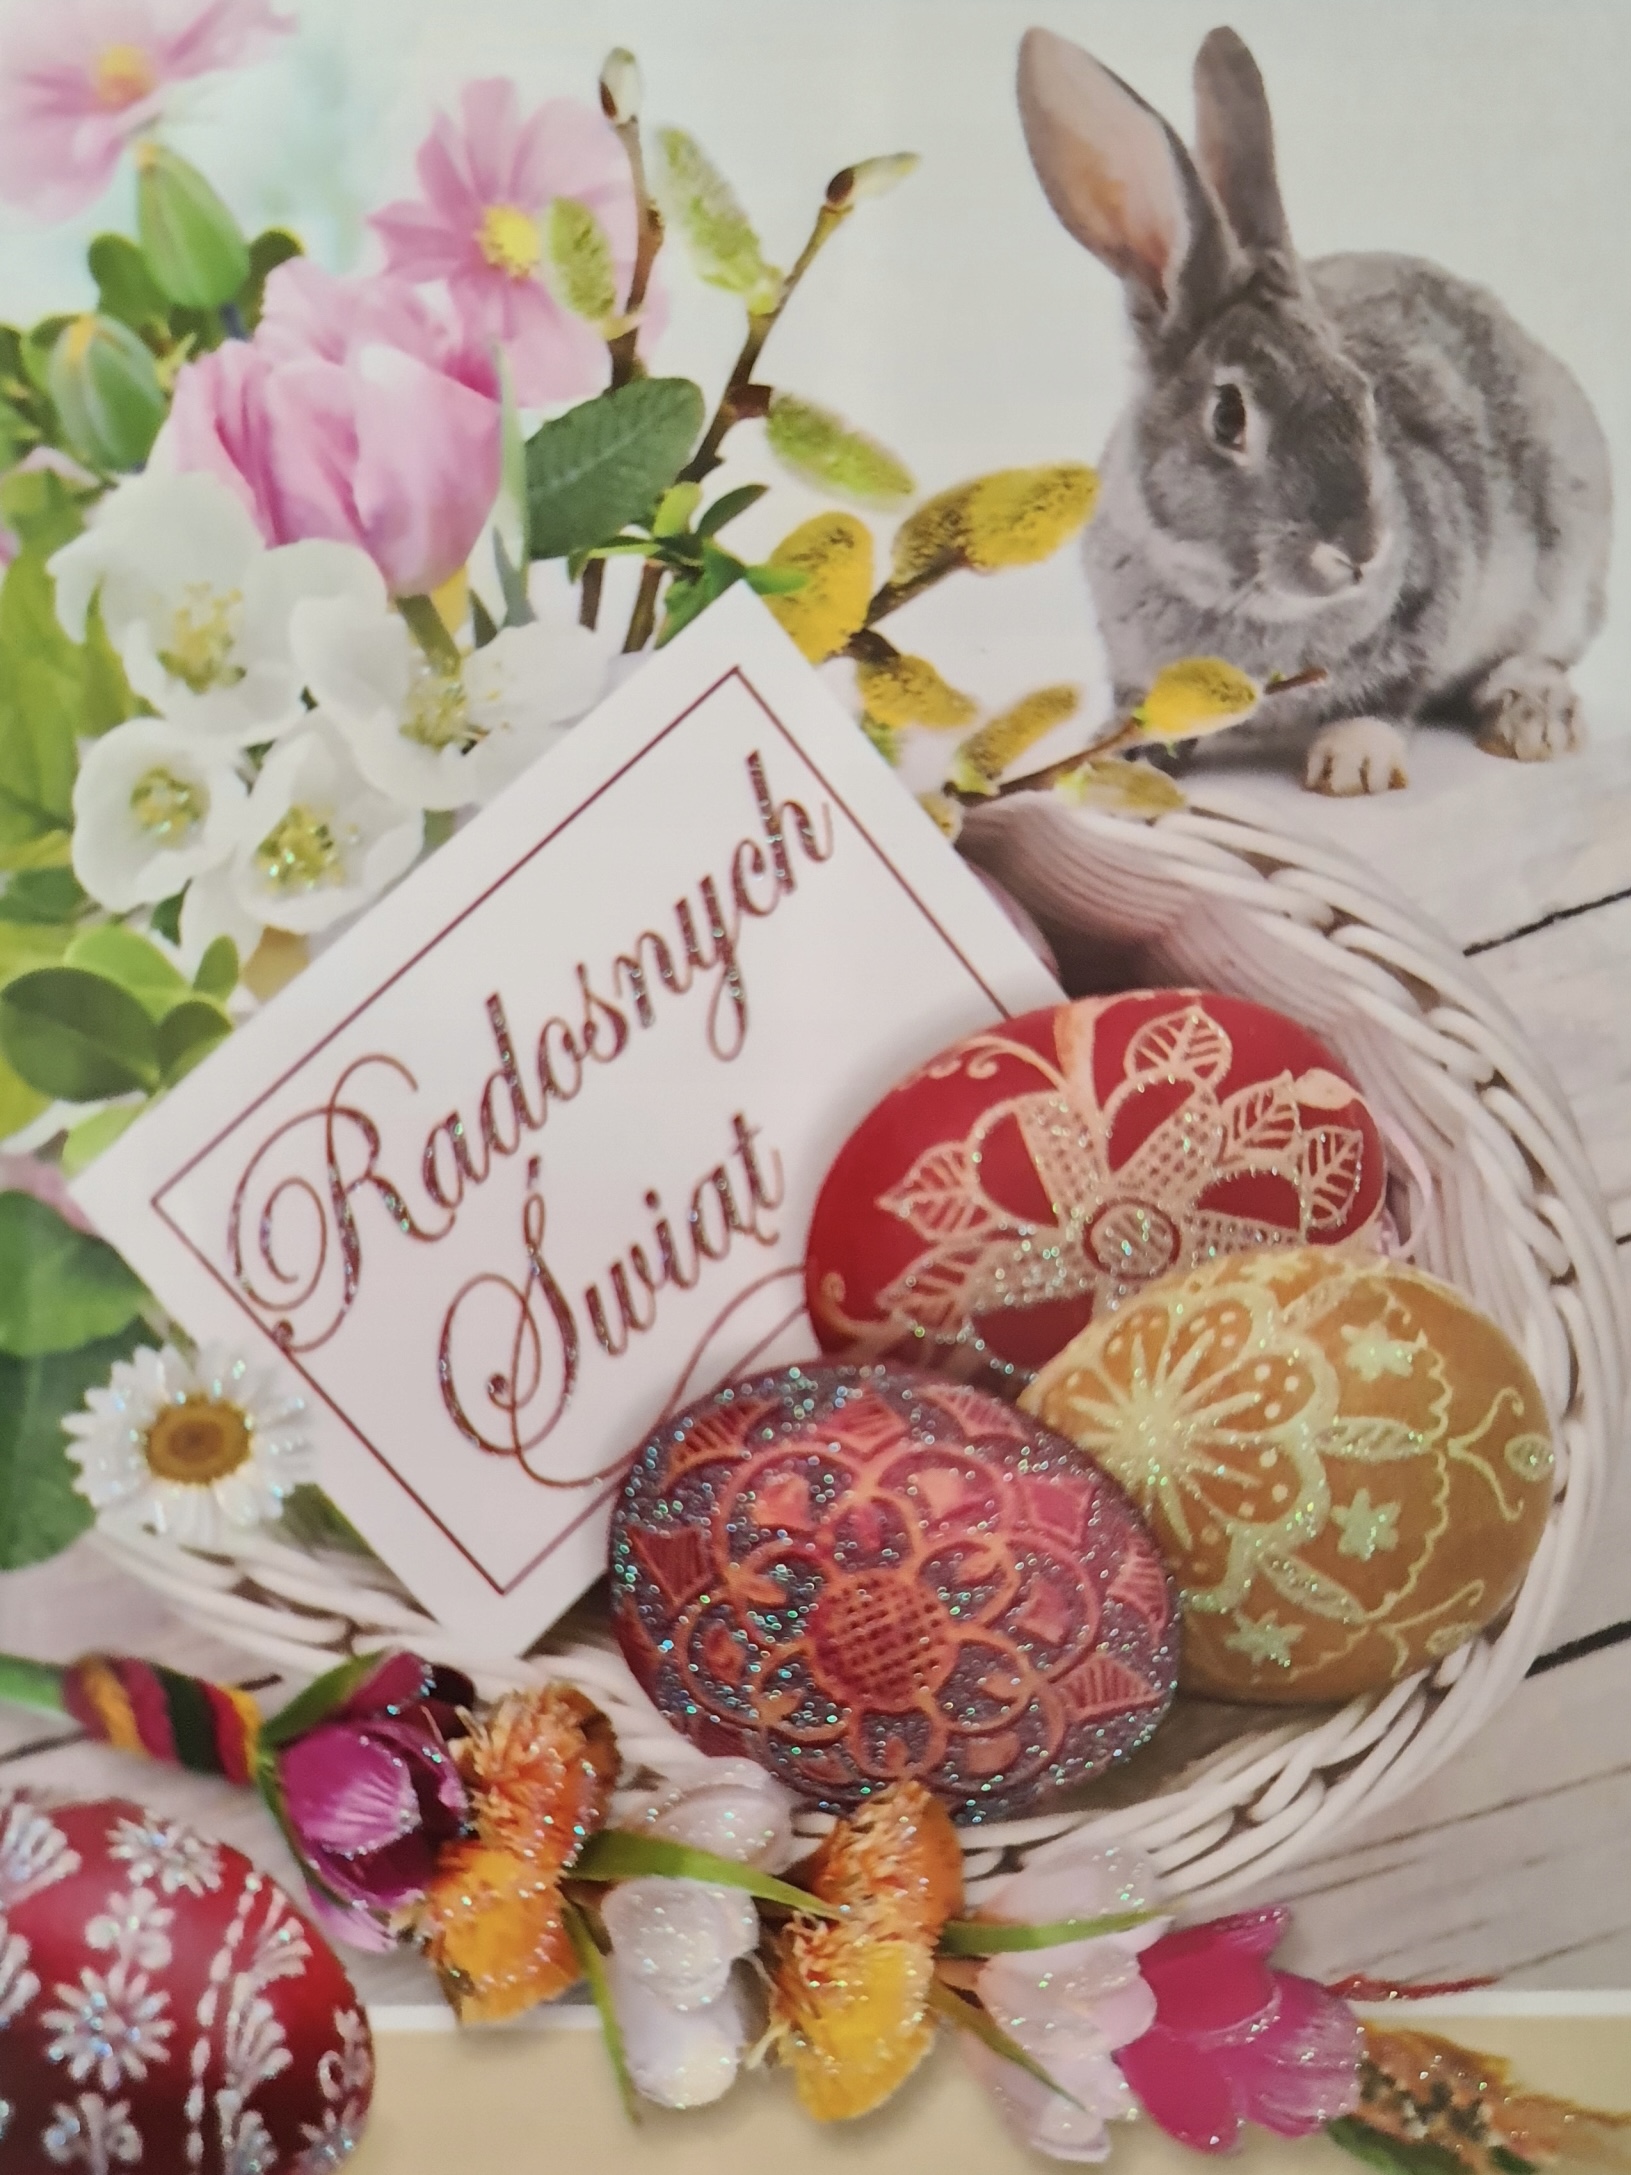 kartka świąteczno-wielkanocna. W koszyczku ozdobione jajka z włożoną kartką z napisem Radosnych Świąt. Koszyczek leży na stole, obok koszyczka siedzi zajączek. W prawym górnym rogu kwiatki białe i różowe